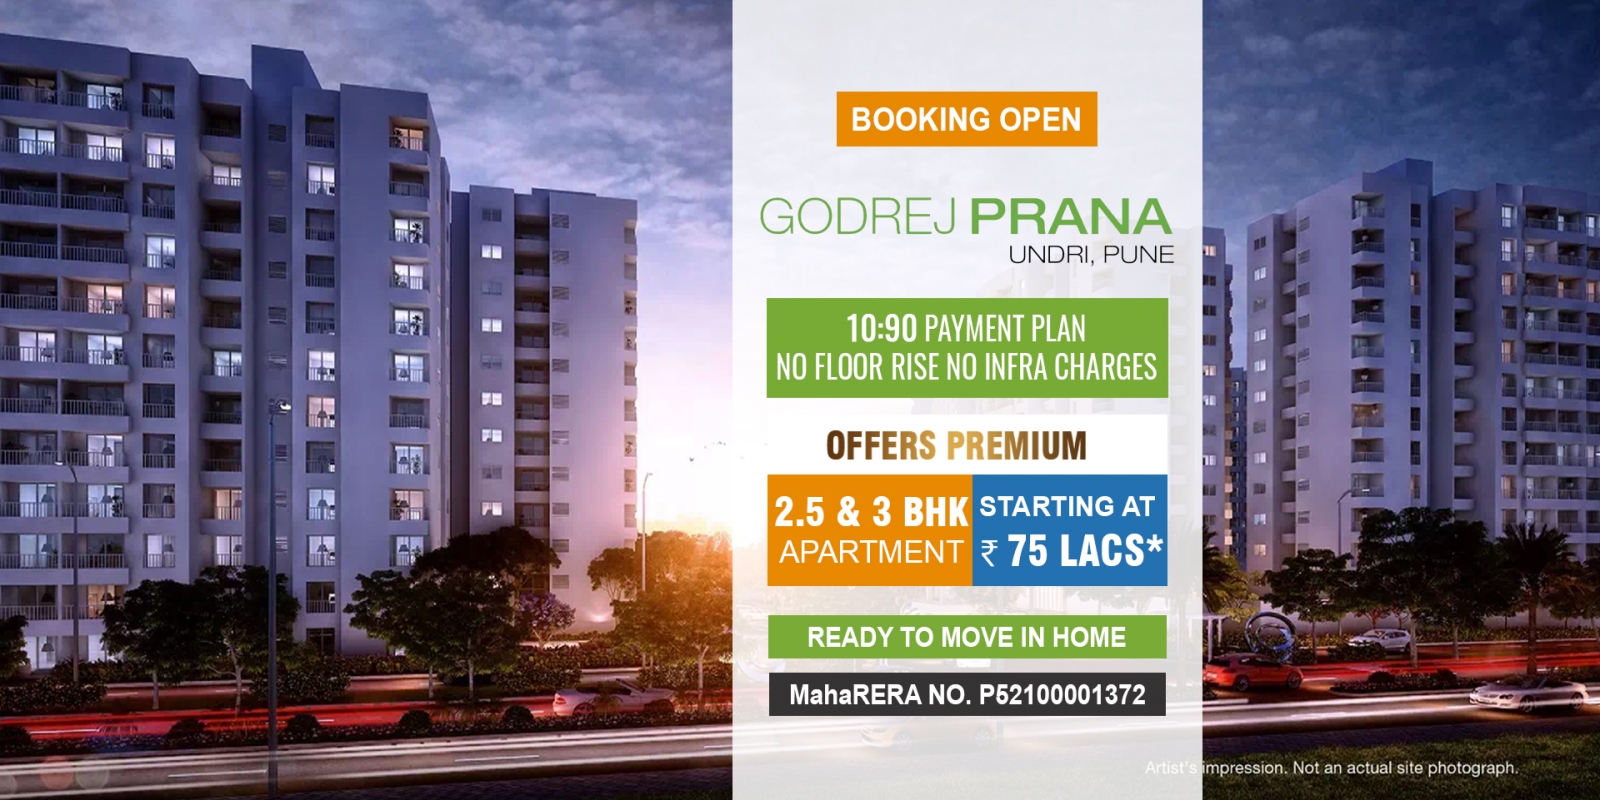 Godrej Prana Pune-godrej prana banner.jpg